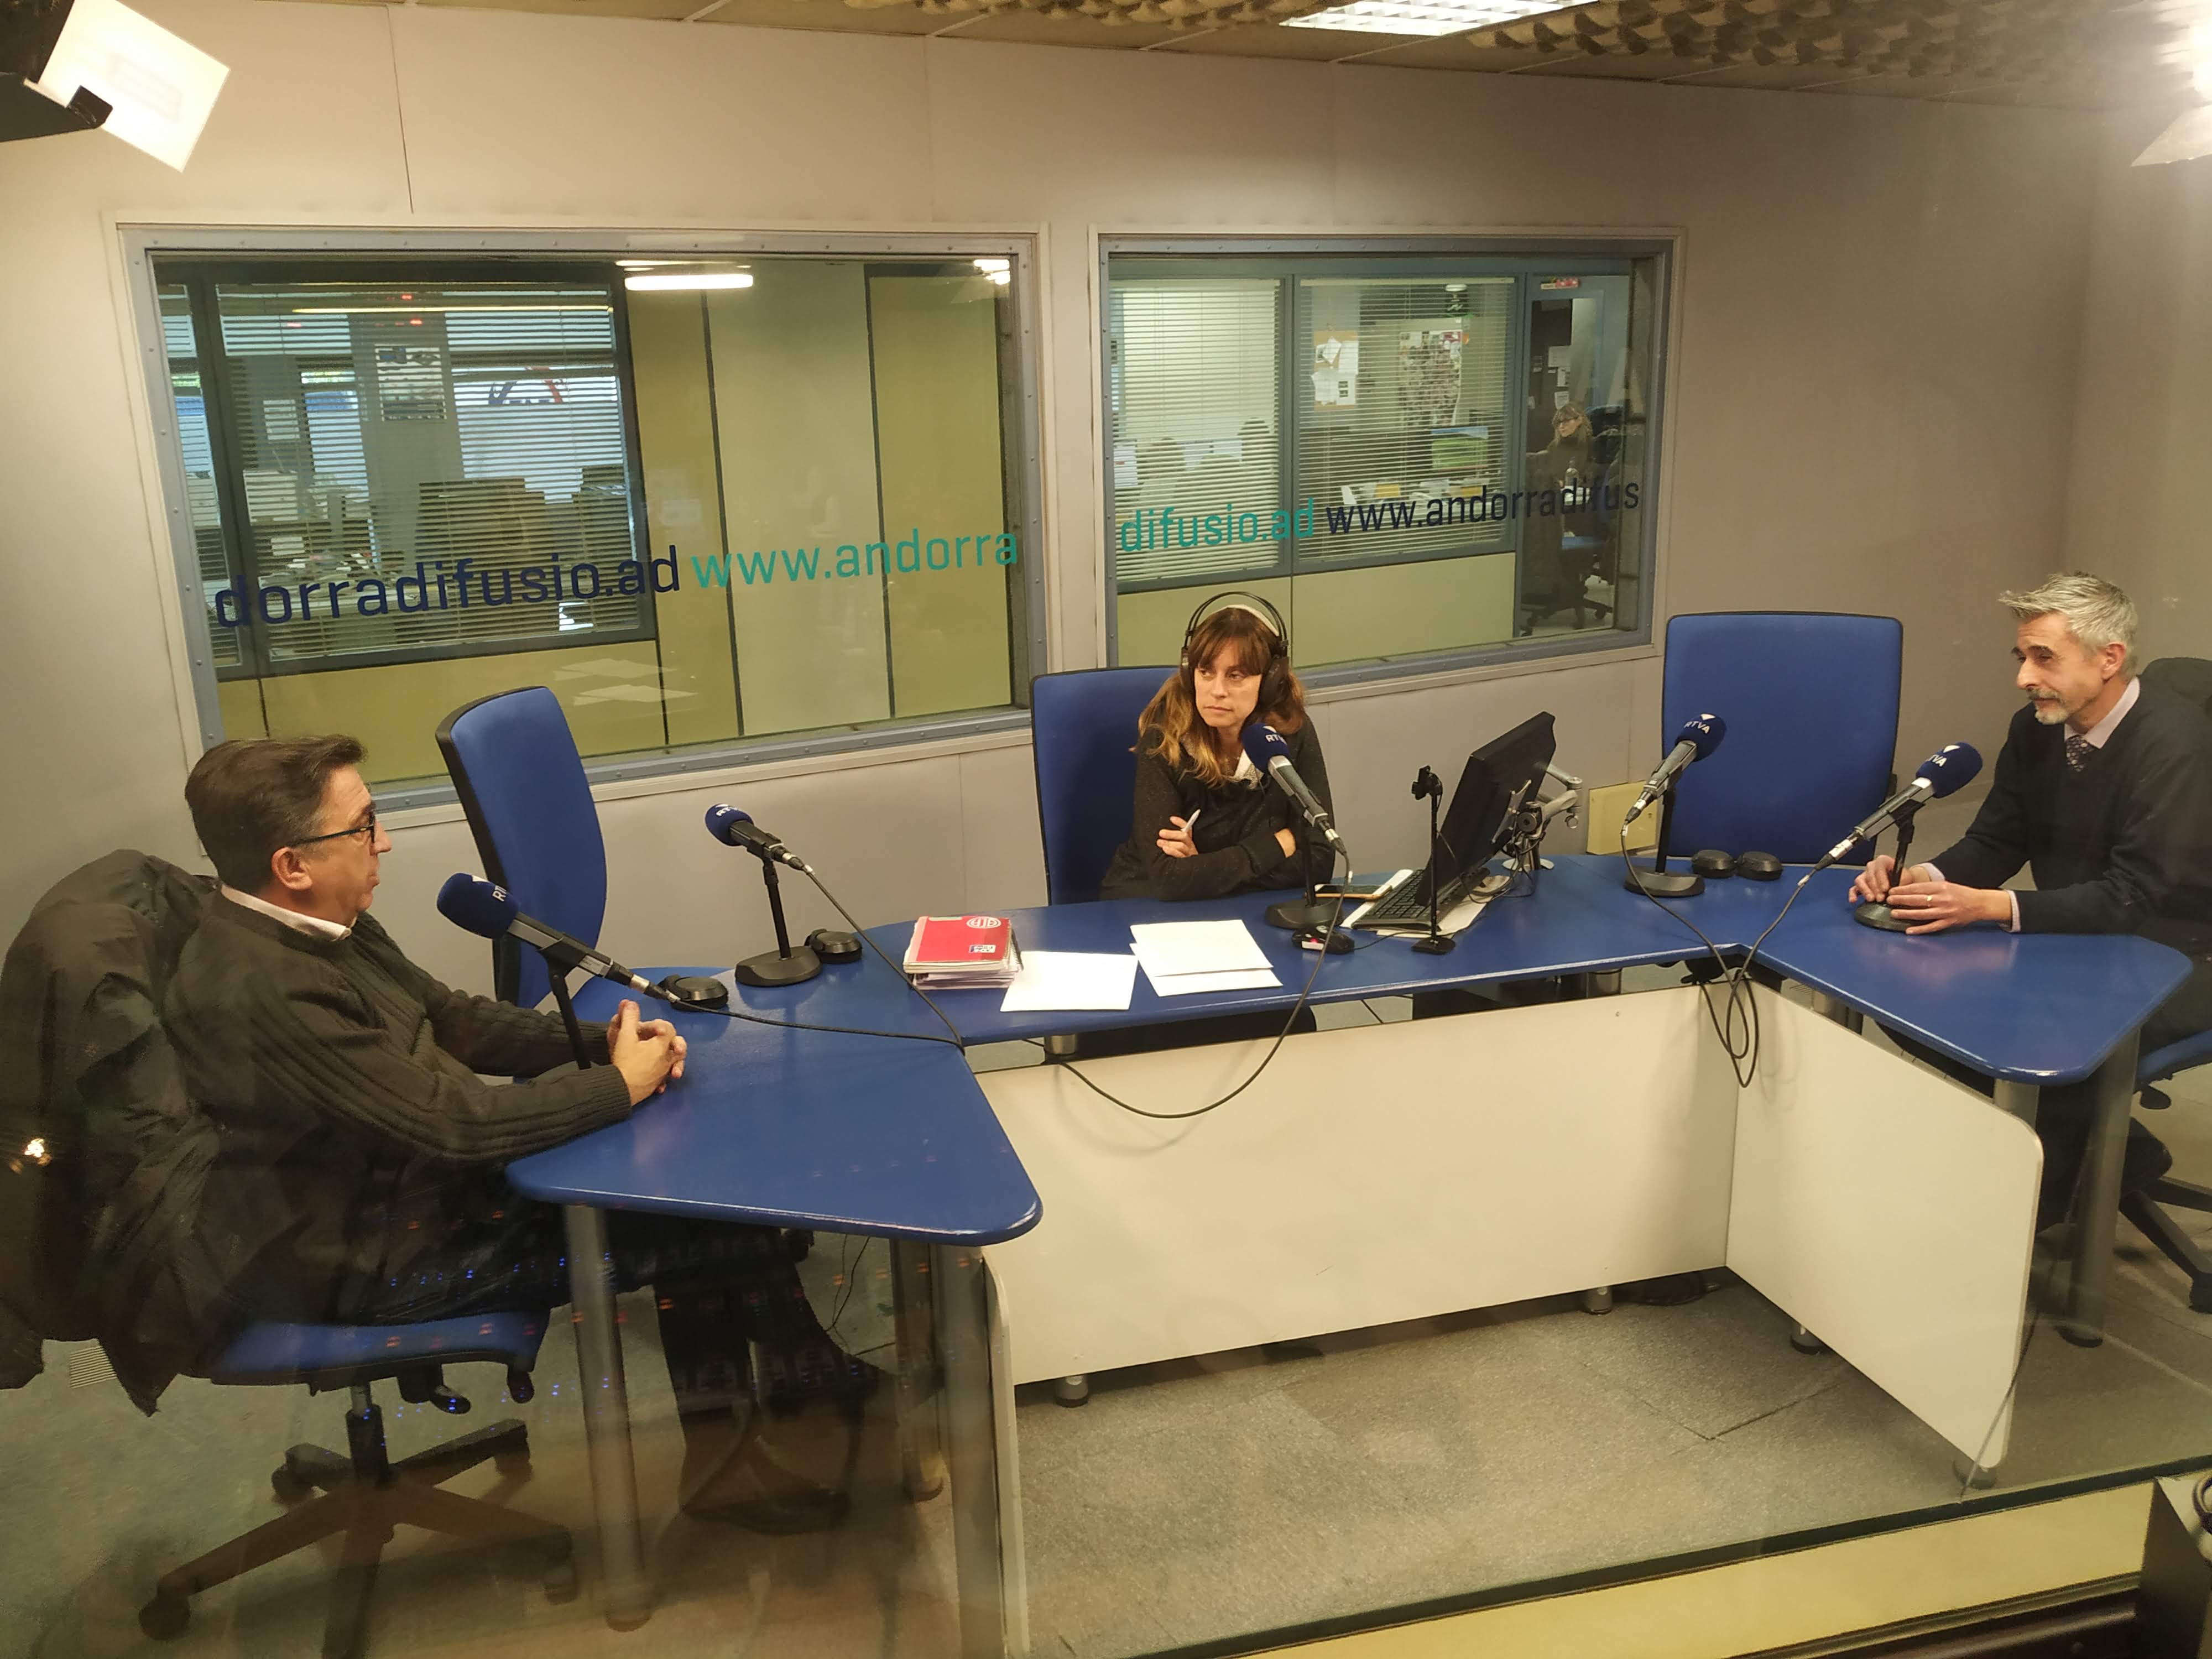 Tertúlia amb Juli Fernández i Josep Maria Cucalón 18 de novembre del 2019